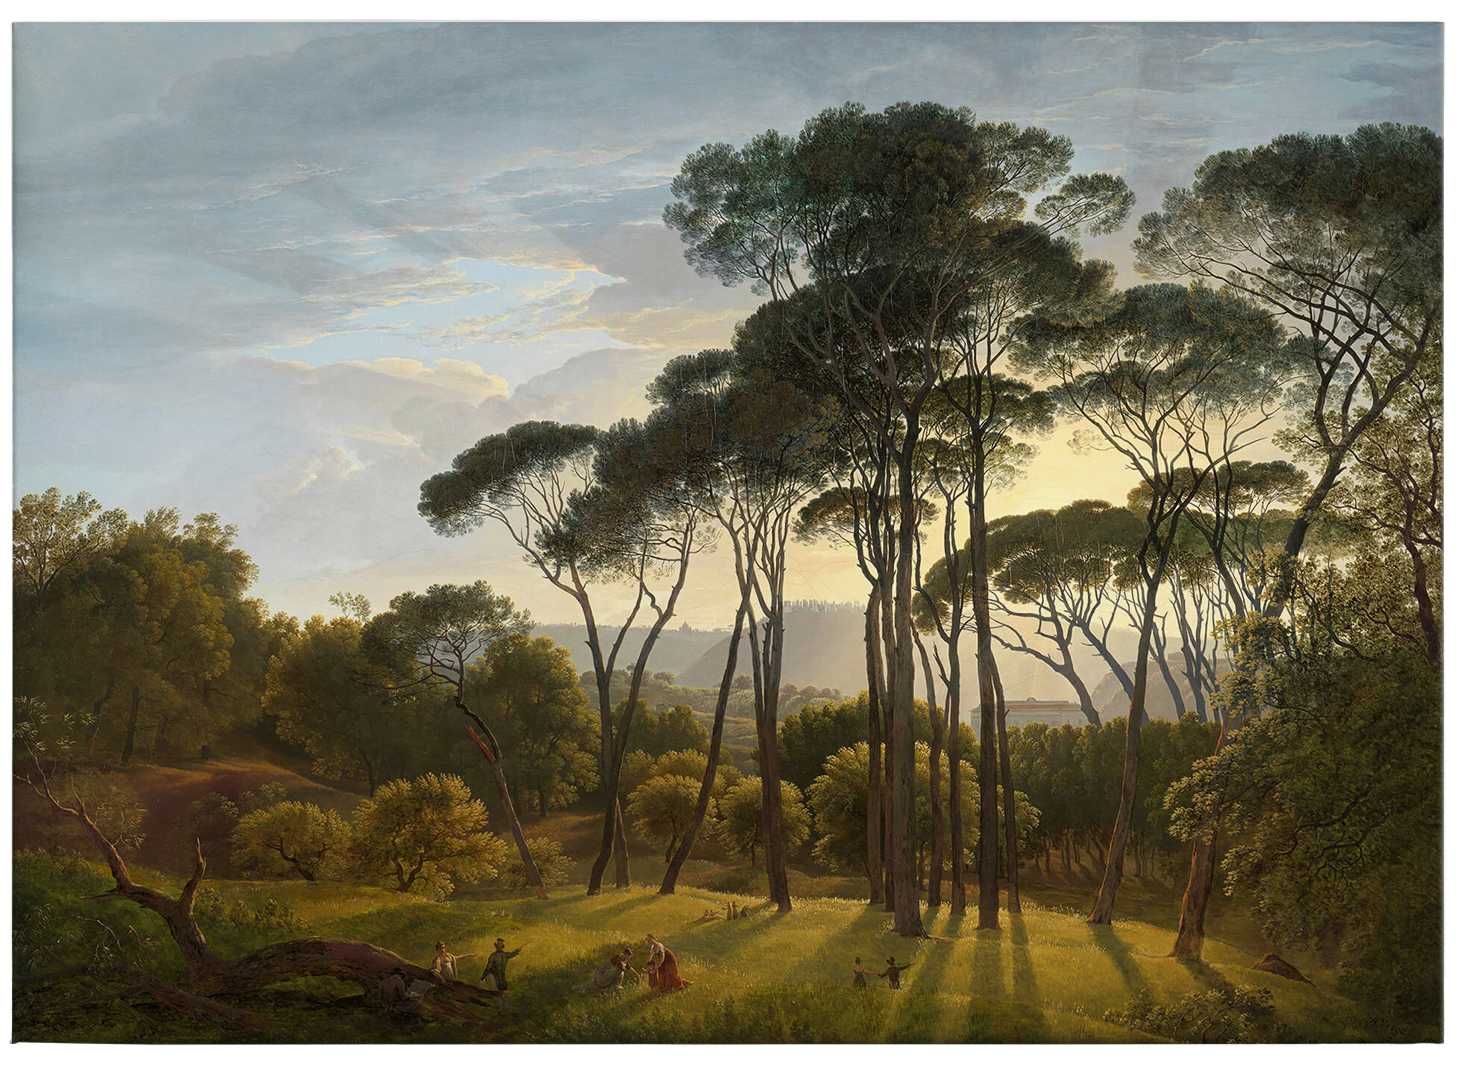             Peinture sur toile Paysage italien de Voogd - 0,70 m x 0,50 m
        